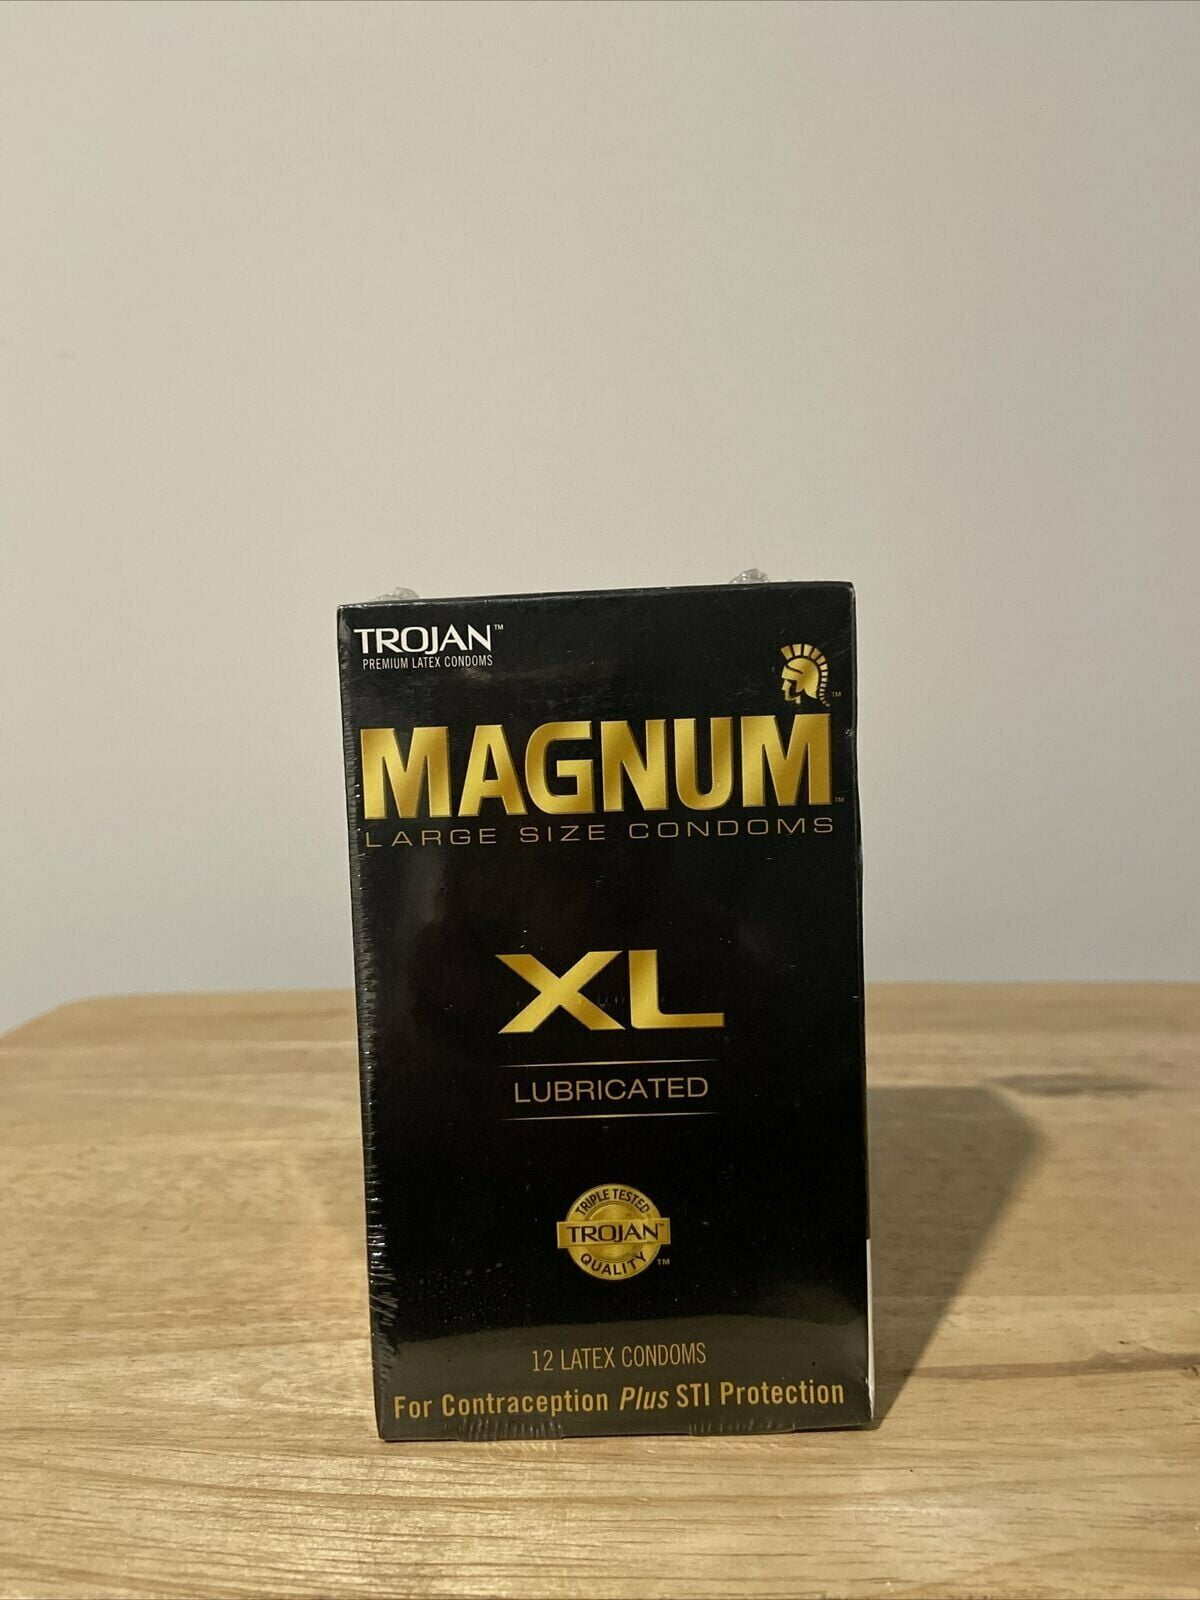 TROJAN Magnum XL Lubricated Premium Latex Condoms 12 Each (Pack of 2) 